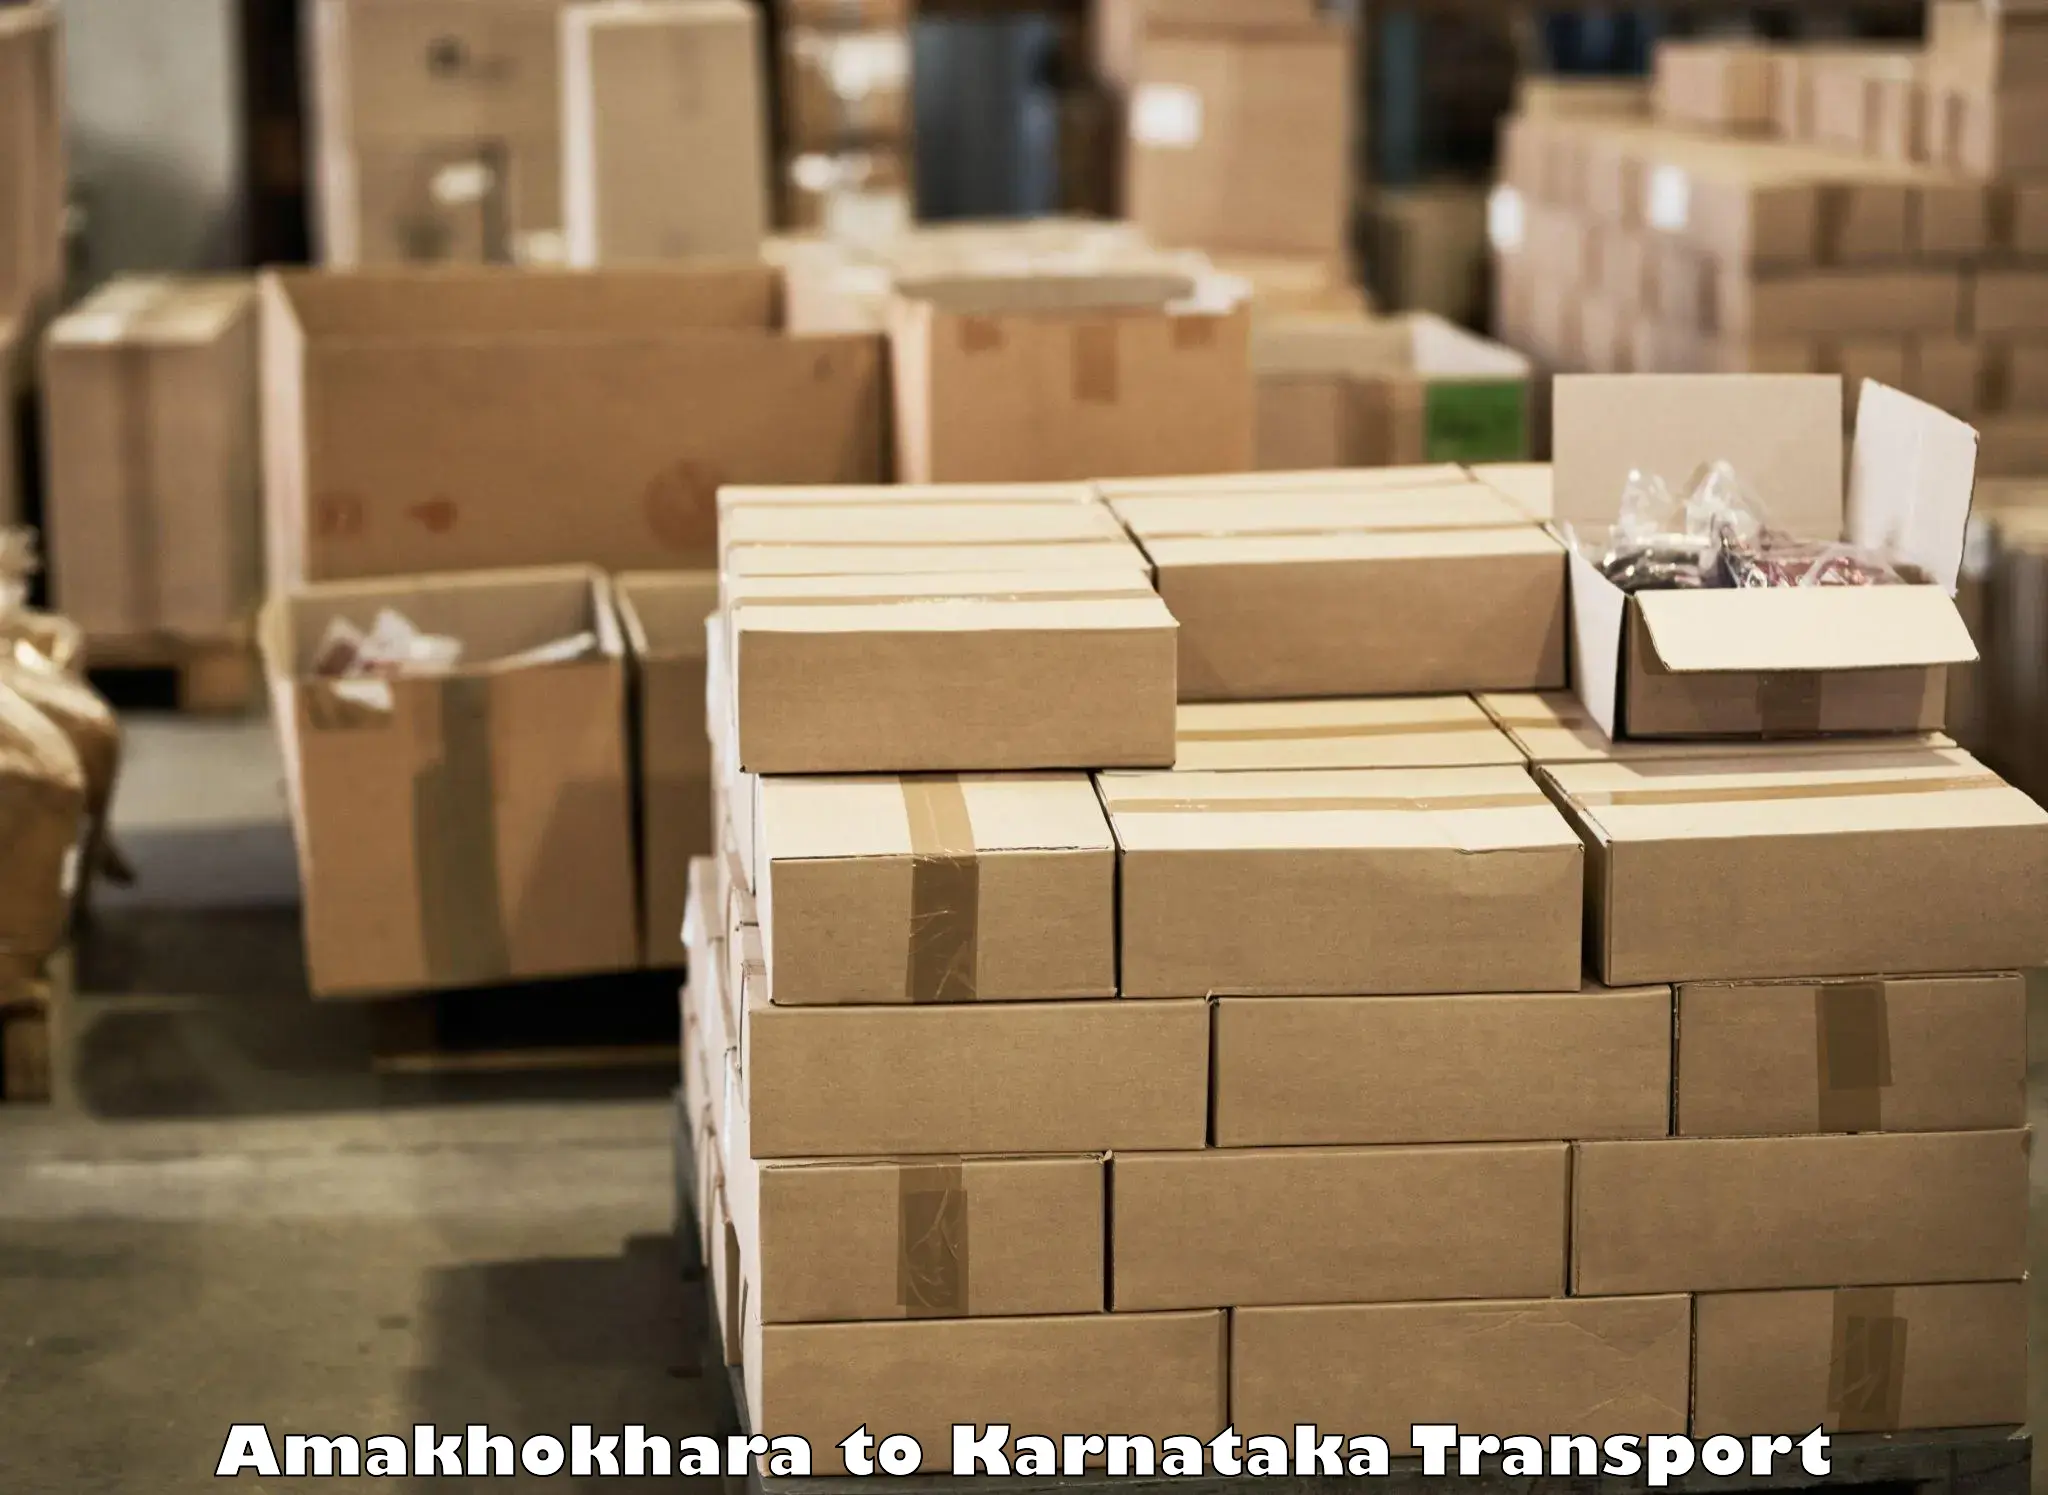 Transportation solution services Amakhokhara to Chikkamagaluru